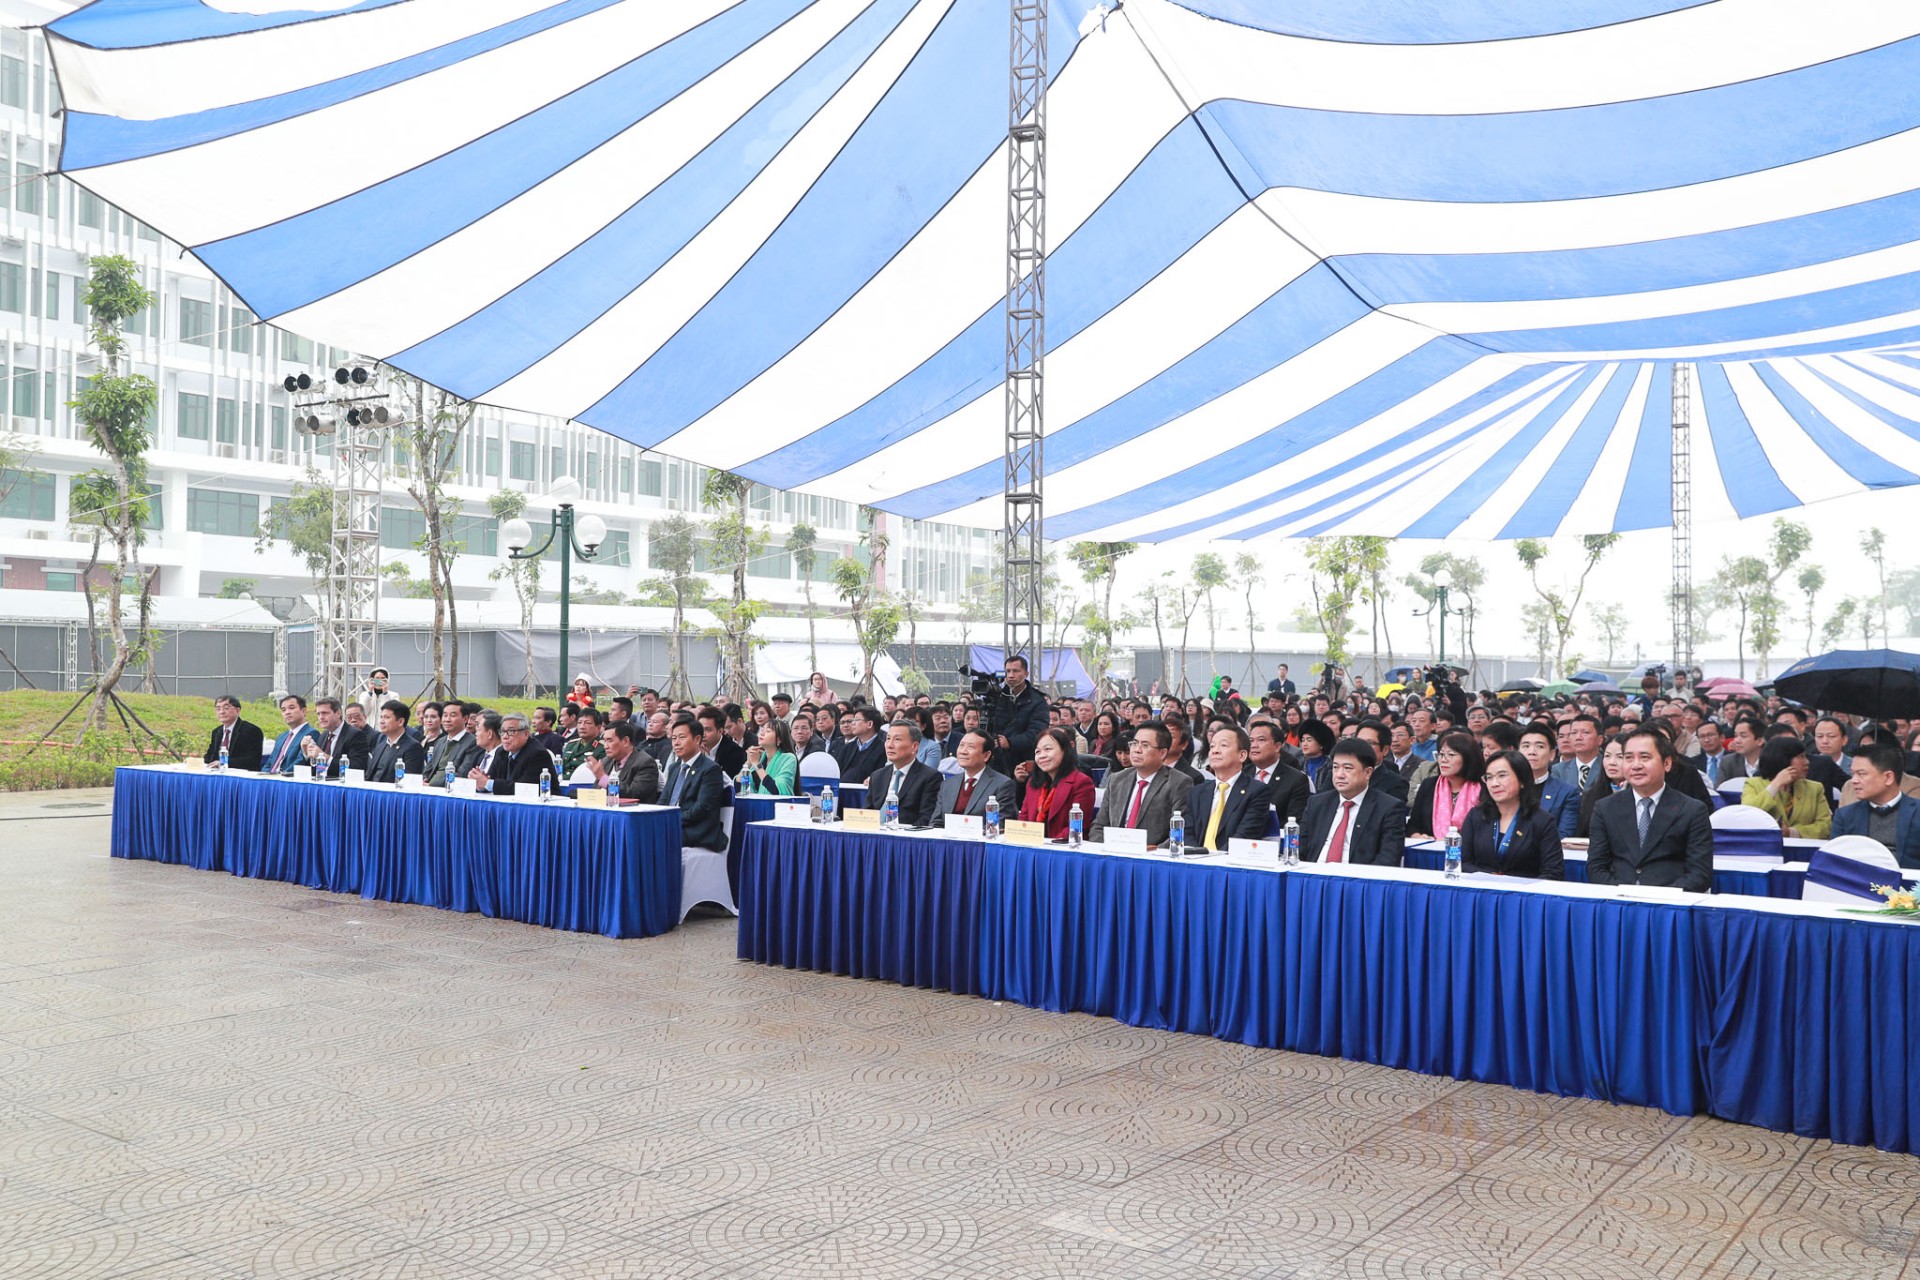 (USSH) Sức hút "Nhân văn" tại Hội nghị Xúc tiến đầu tư Đại học Quốc gia Hà Nội năm 2022